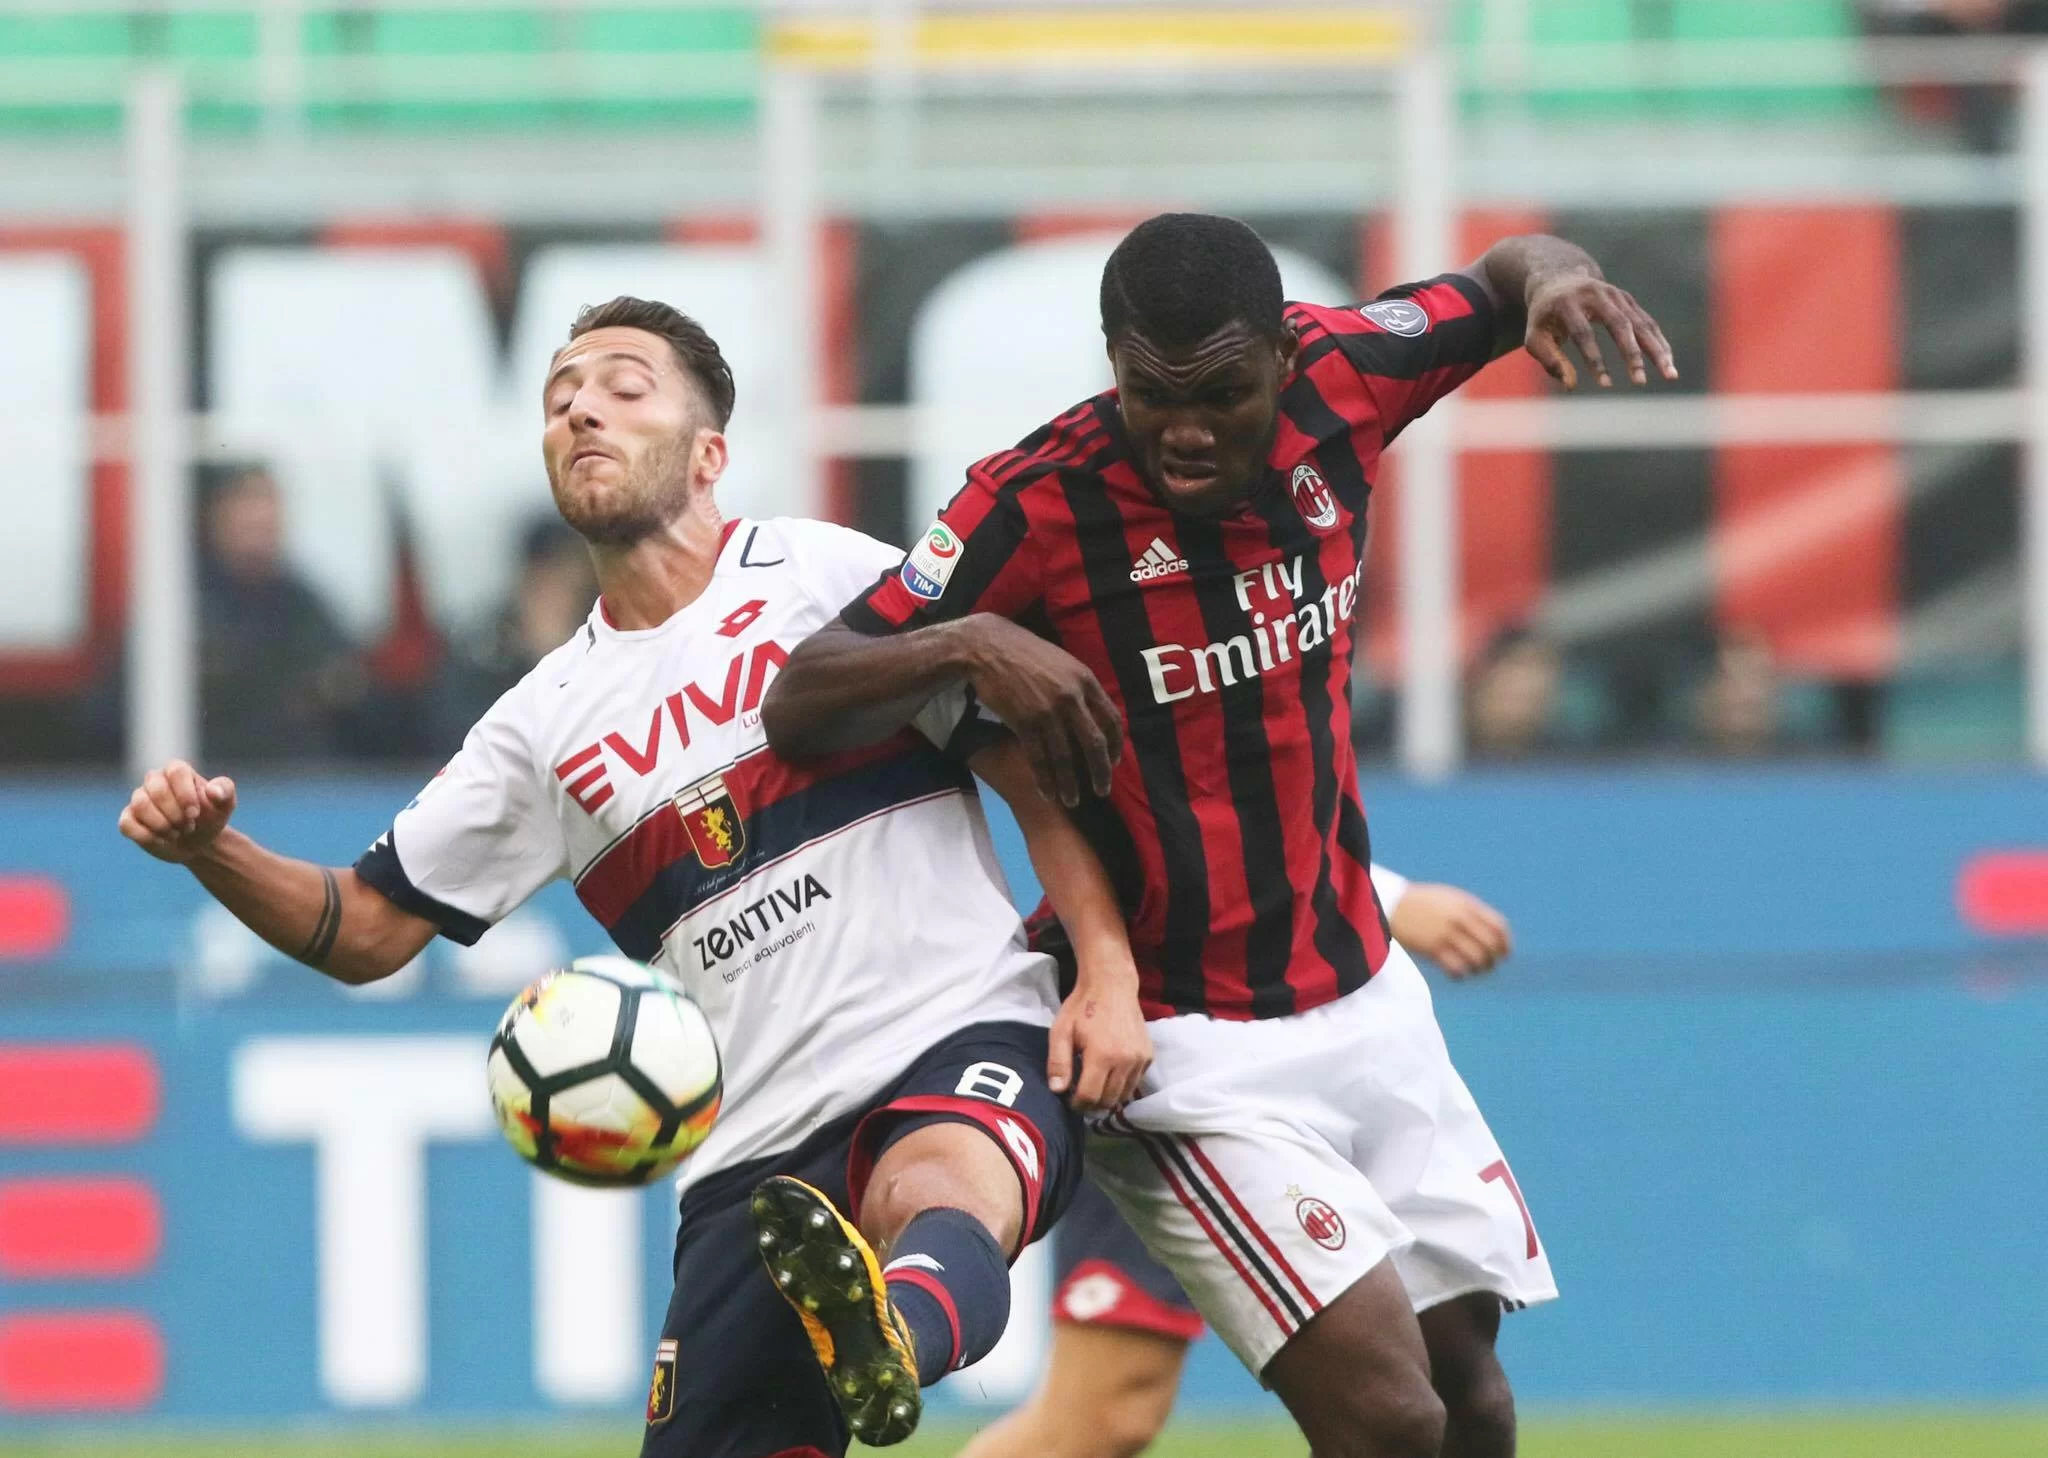 SM • Settimana prossima altro incontro Milan-Genoa per Bertolacci: Ballardini spinge per la conferma del centrocampista. Il punto